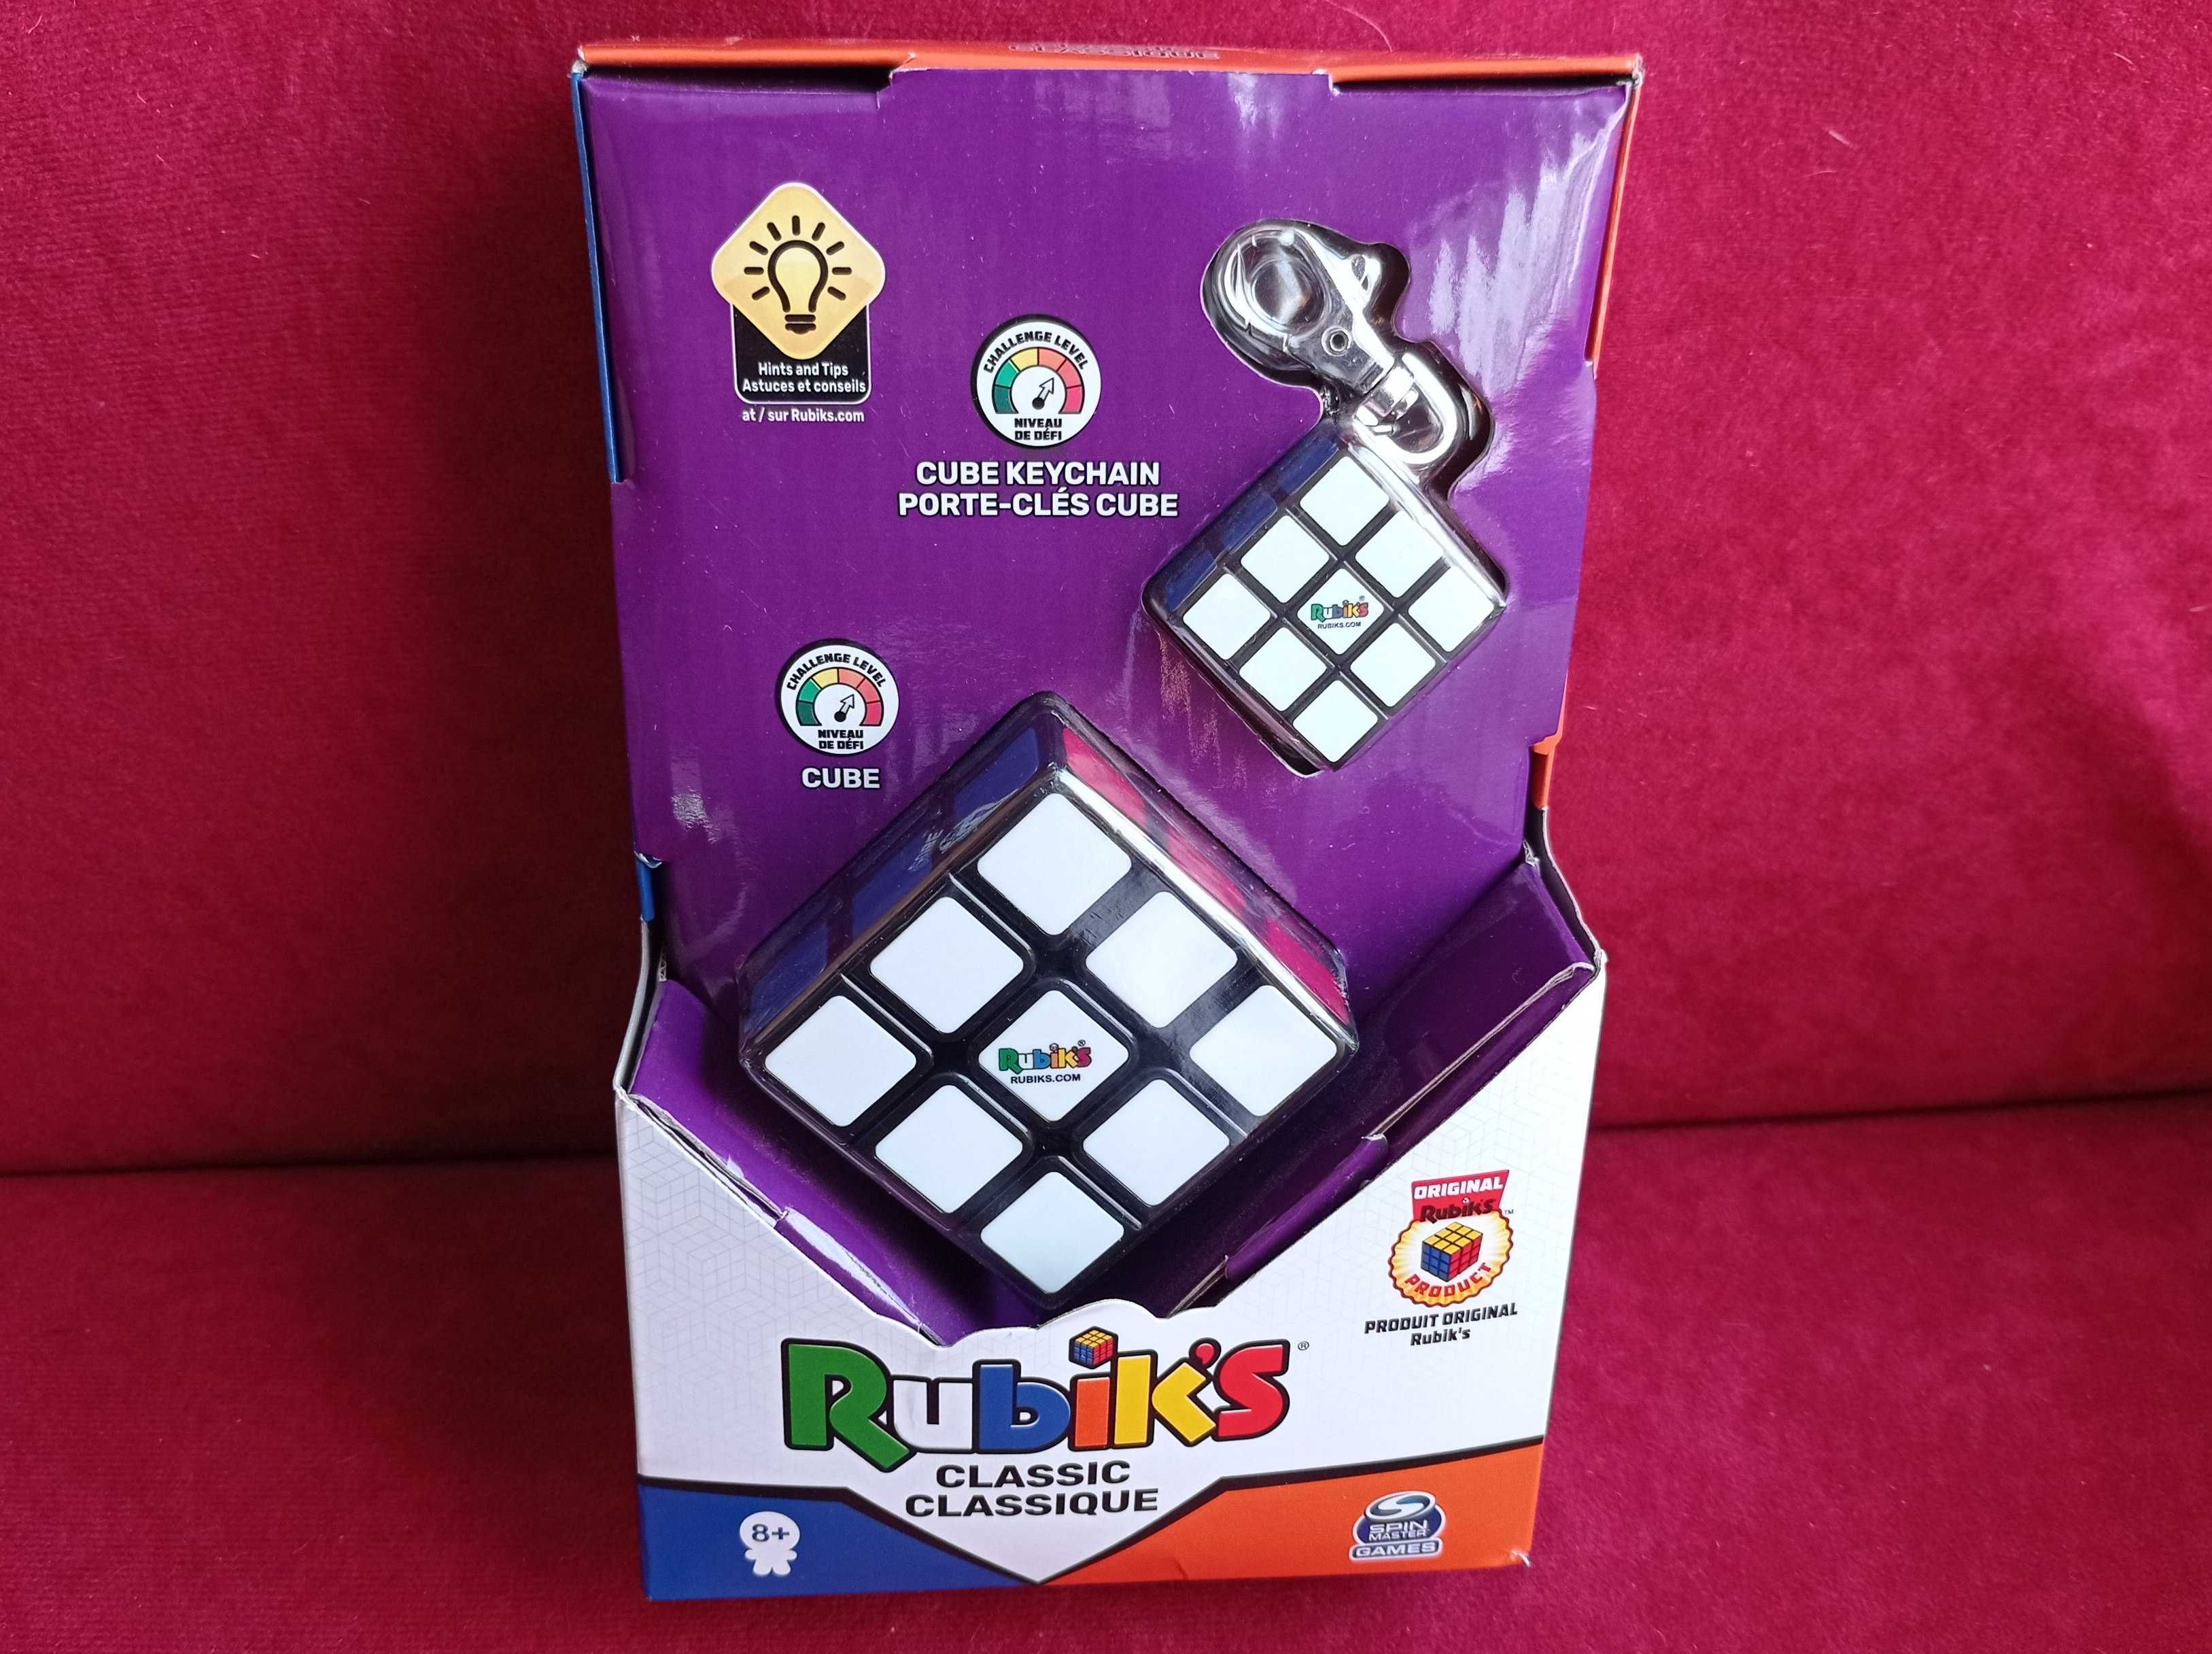 Kostka Rubika Rubik's